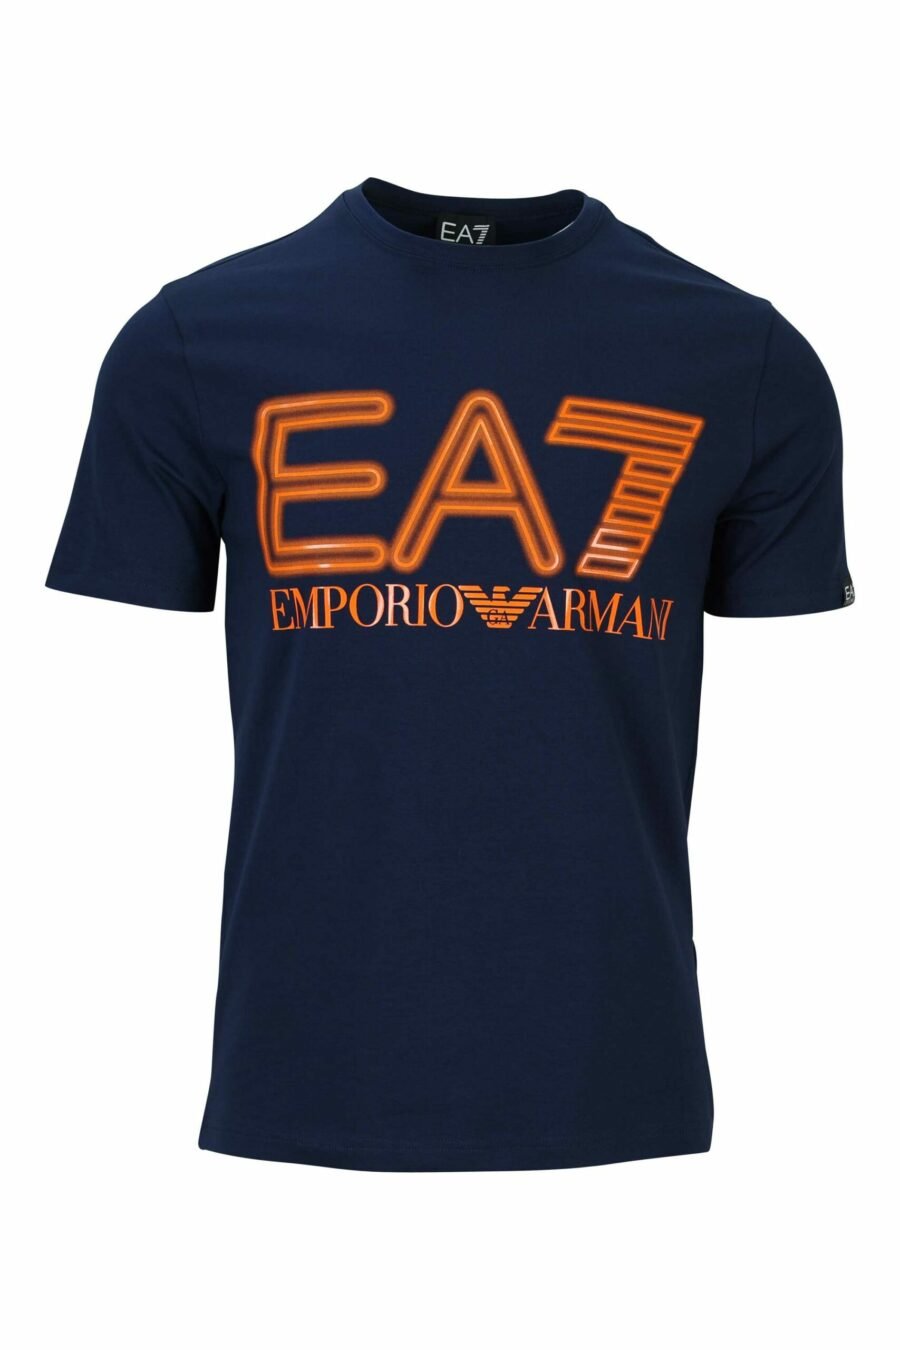 Dunkelblaues T-Shirt mit neonorangem "lux identity" Maxilogo - 8058947491445 skaliert